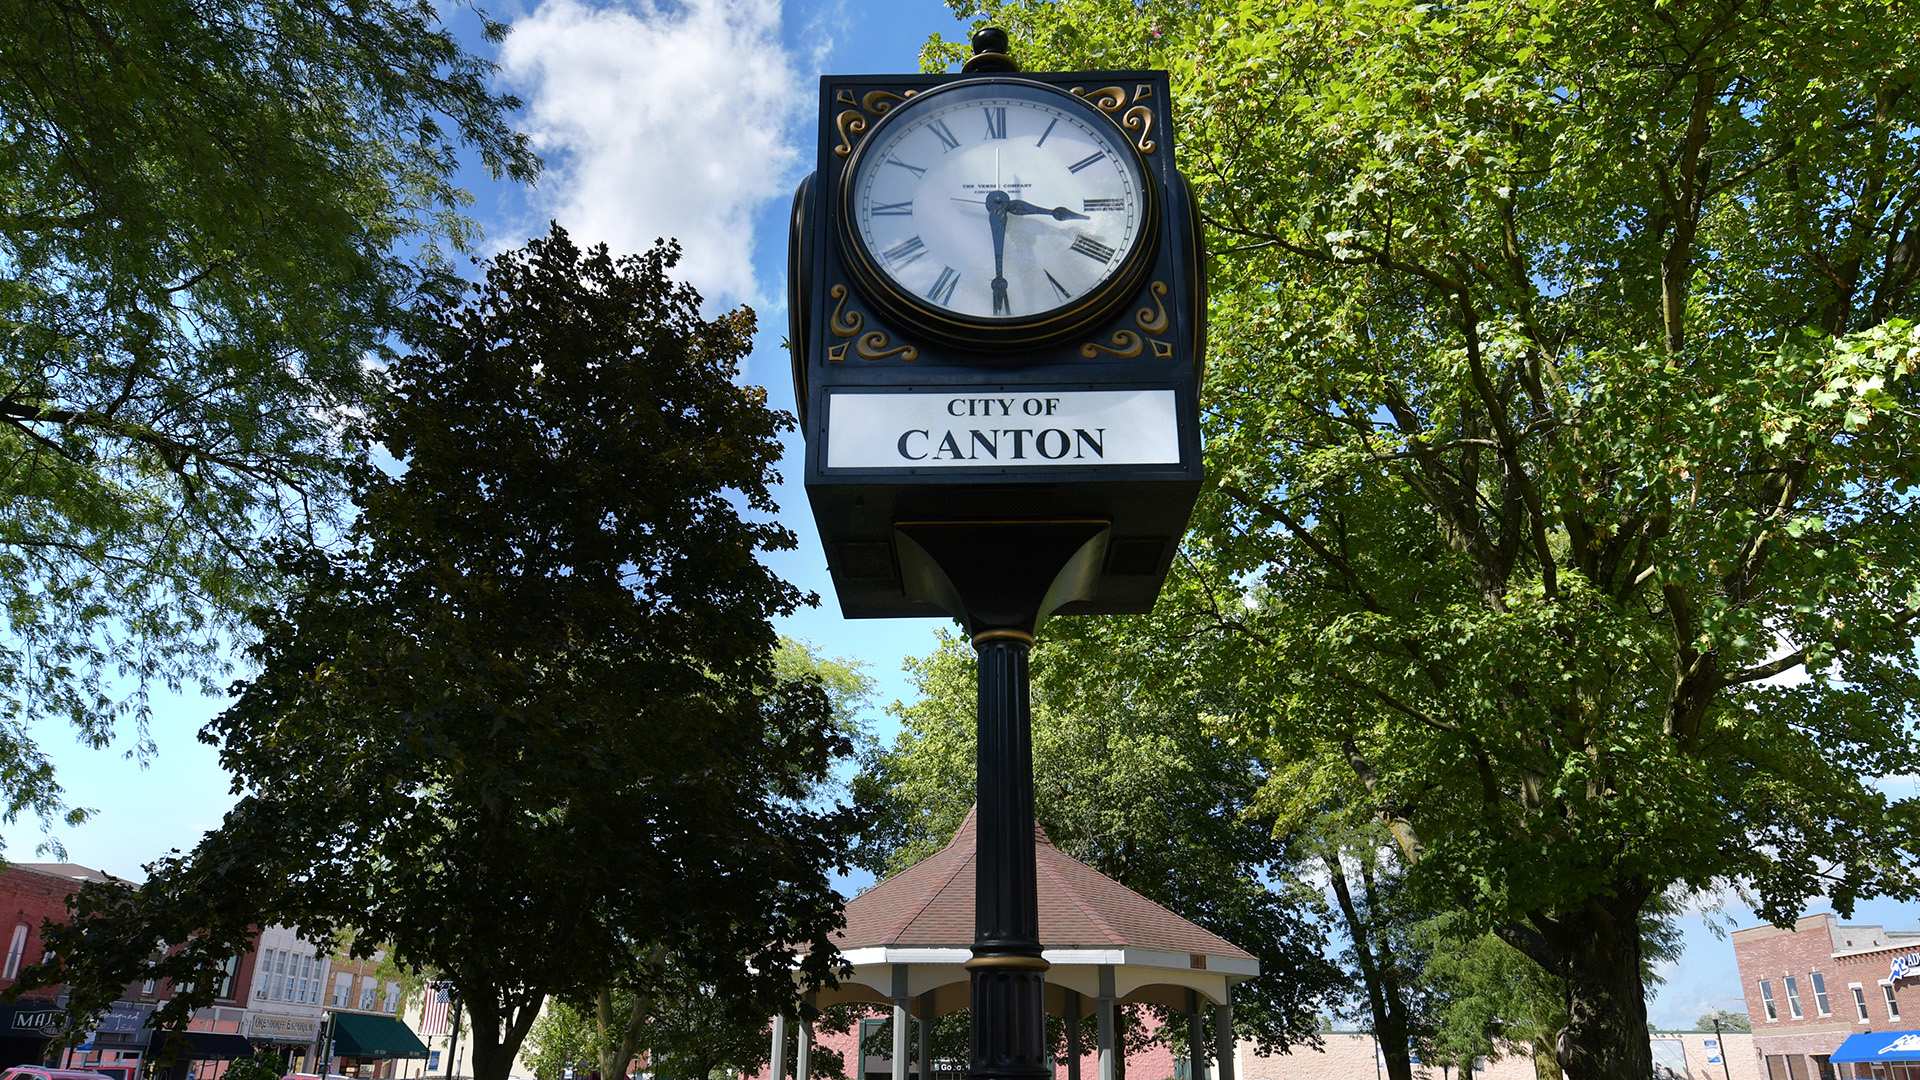 The clock tower in Jones Park in Canton